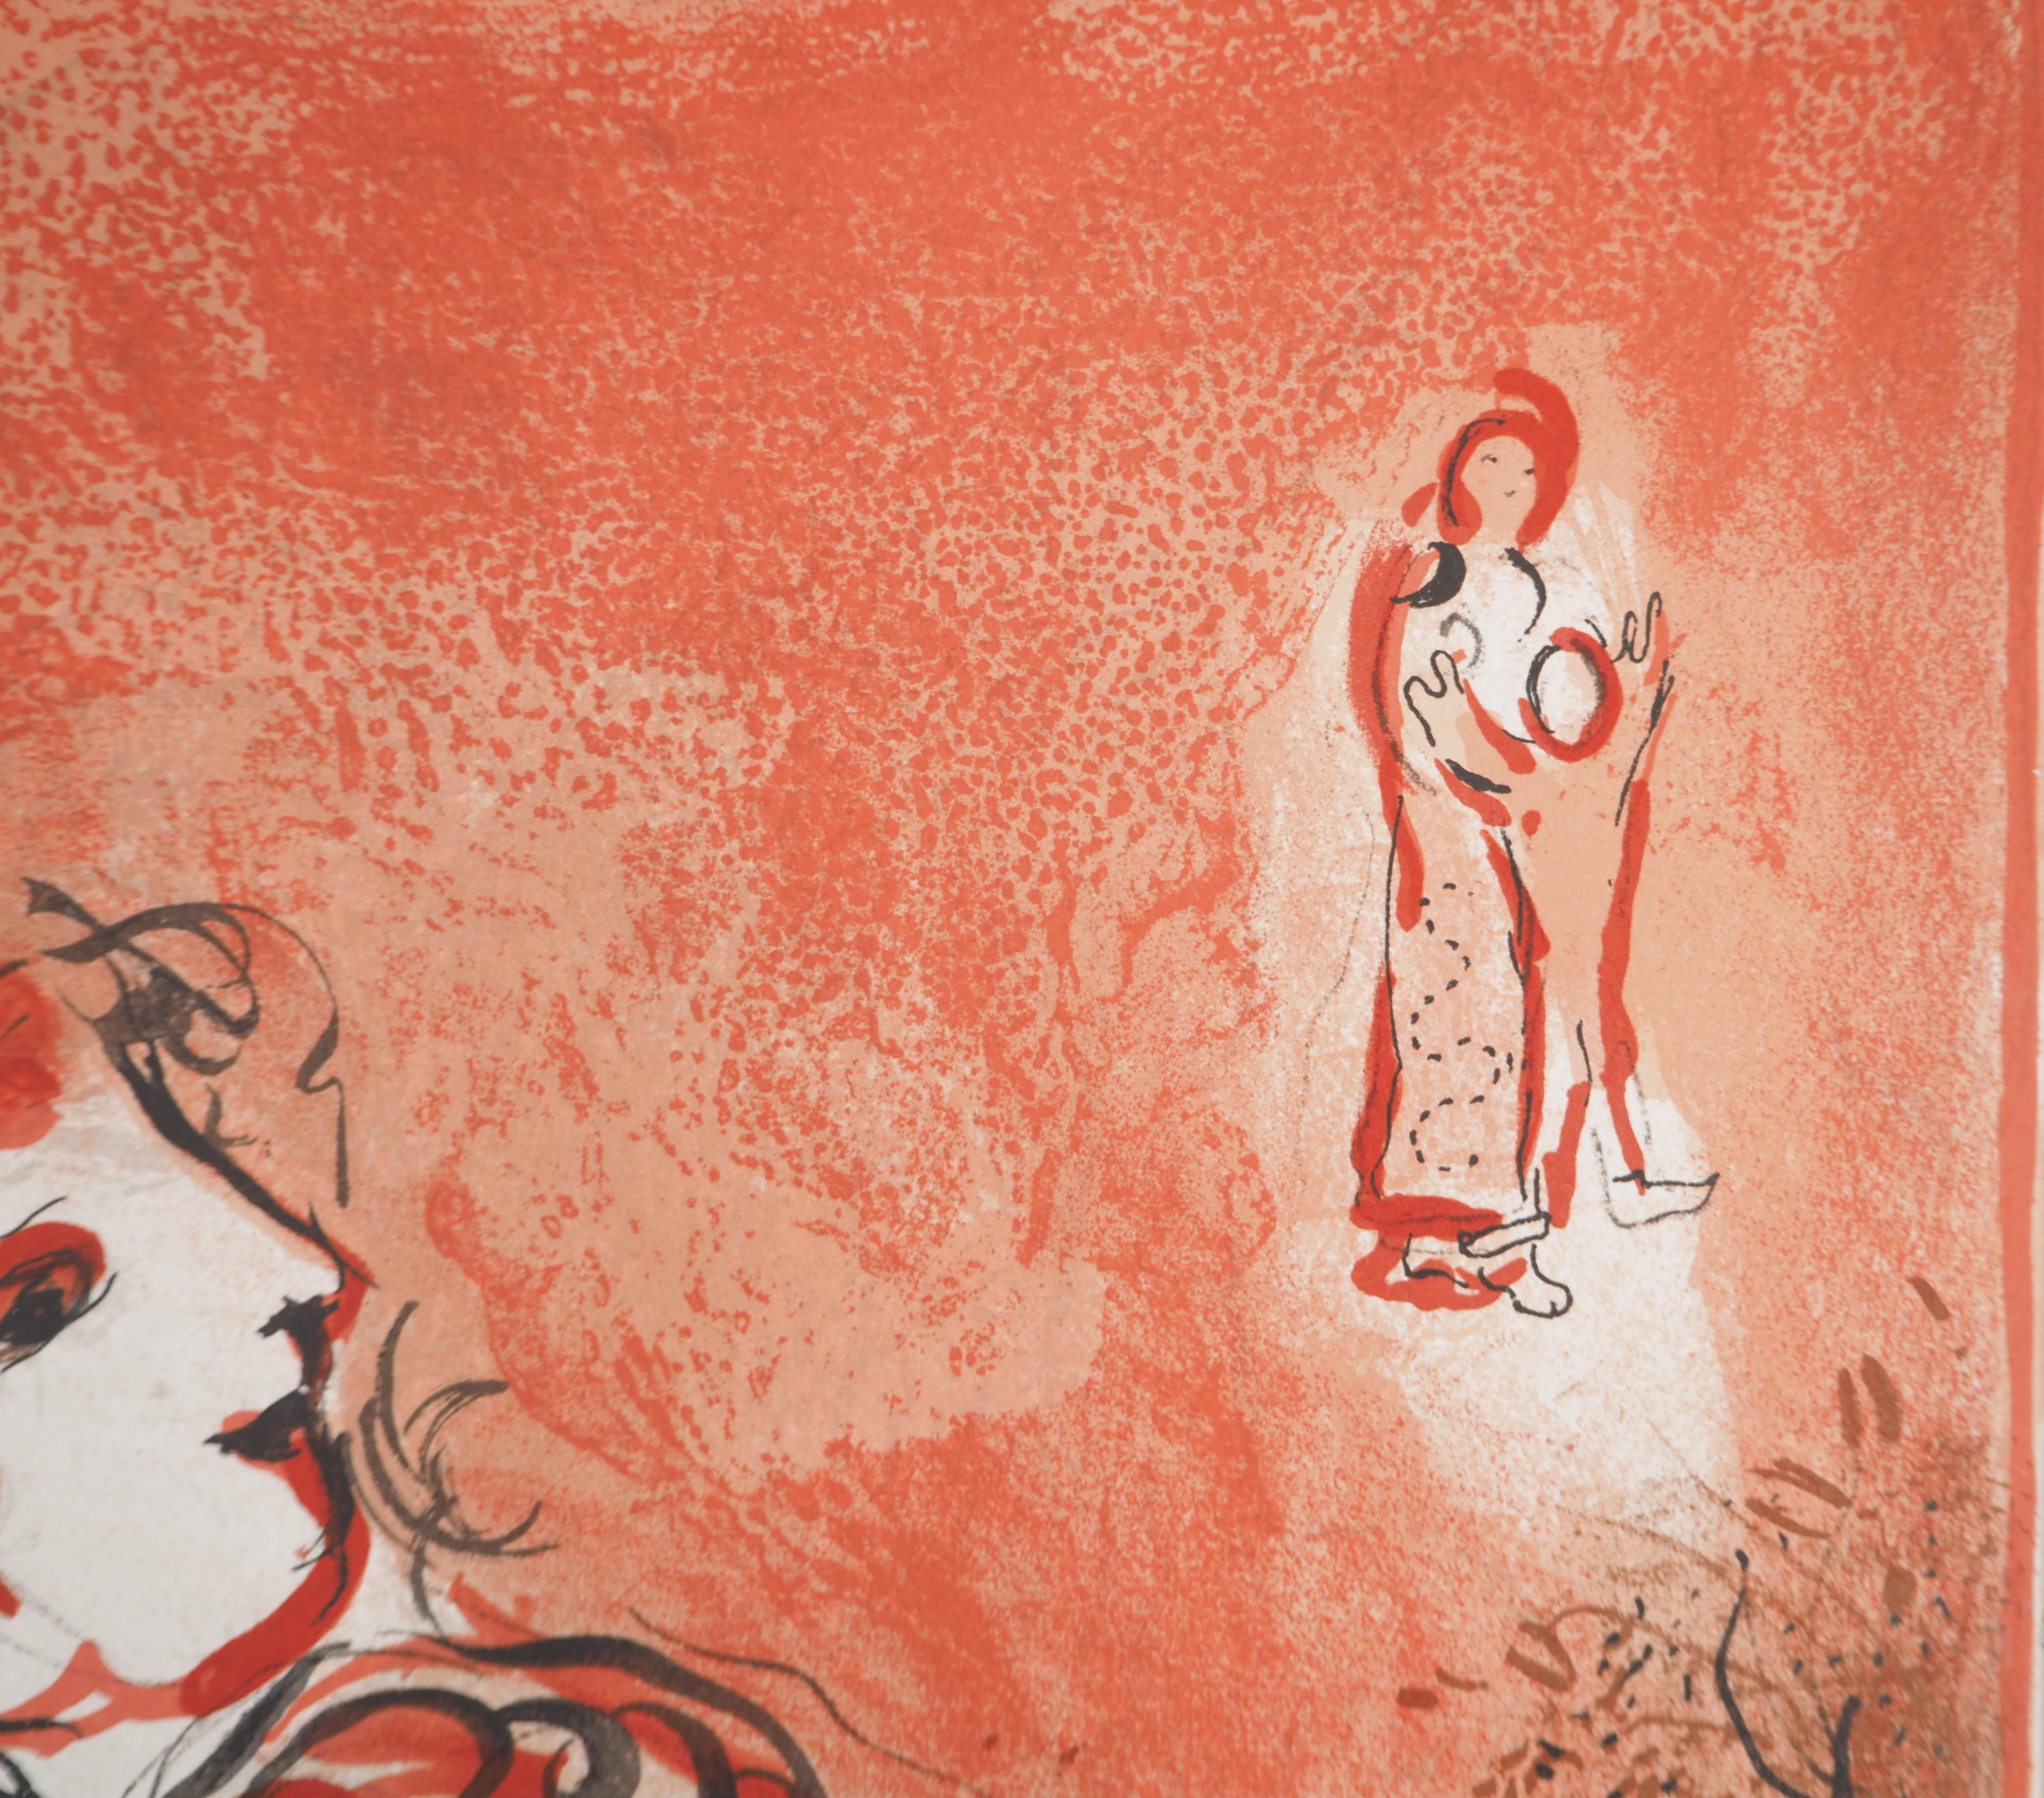 Marc Chagall (1887-1985) 
La Bible, l'ange du salut

Lithographie originale (Atelier Daeger) 
Sur papier 36 x 26.5 cm (c. 14.5 x 10.2 in)

RÉFÉRENCE : 
Catalogue raisonné Chagall Lithographe, Mourlot #231

INFORMATION : Édition pour le magazine